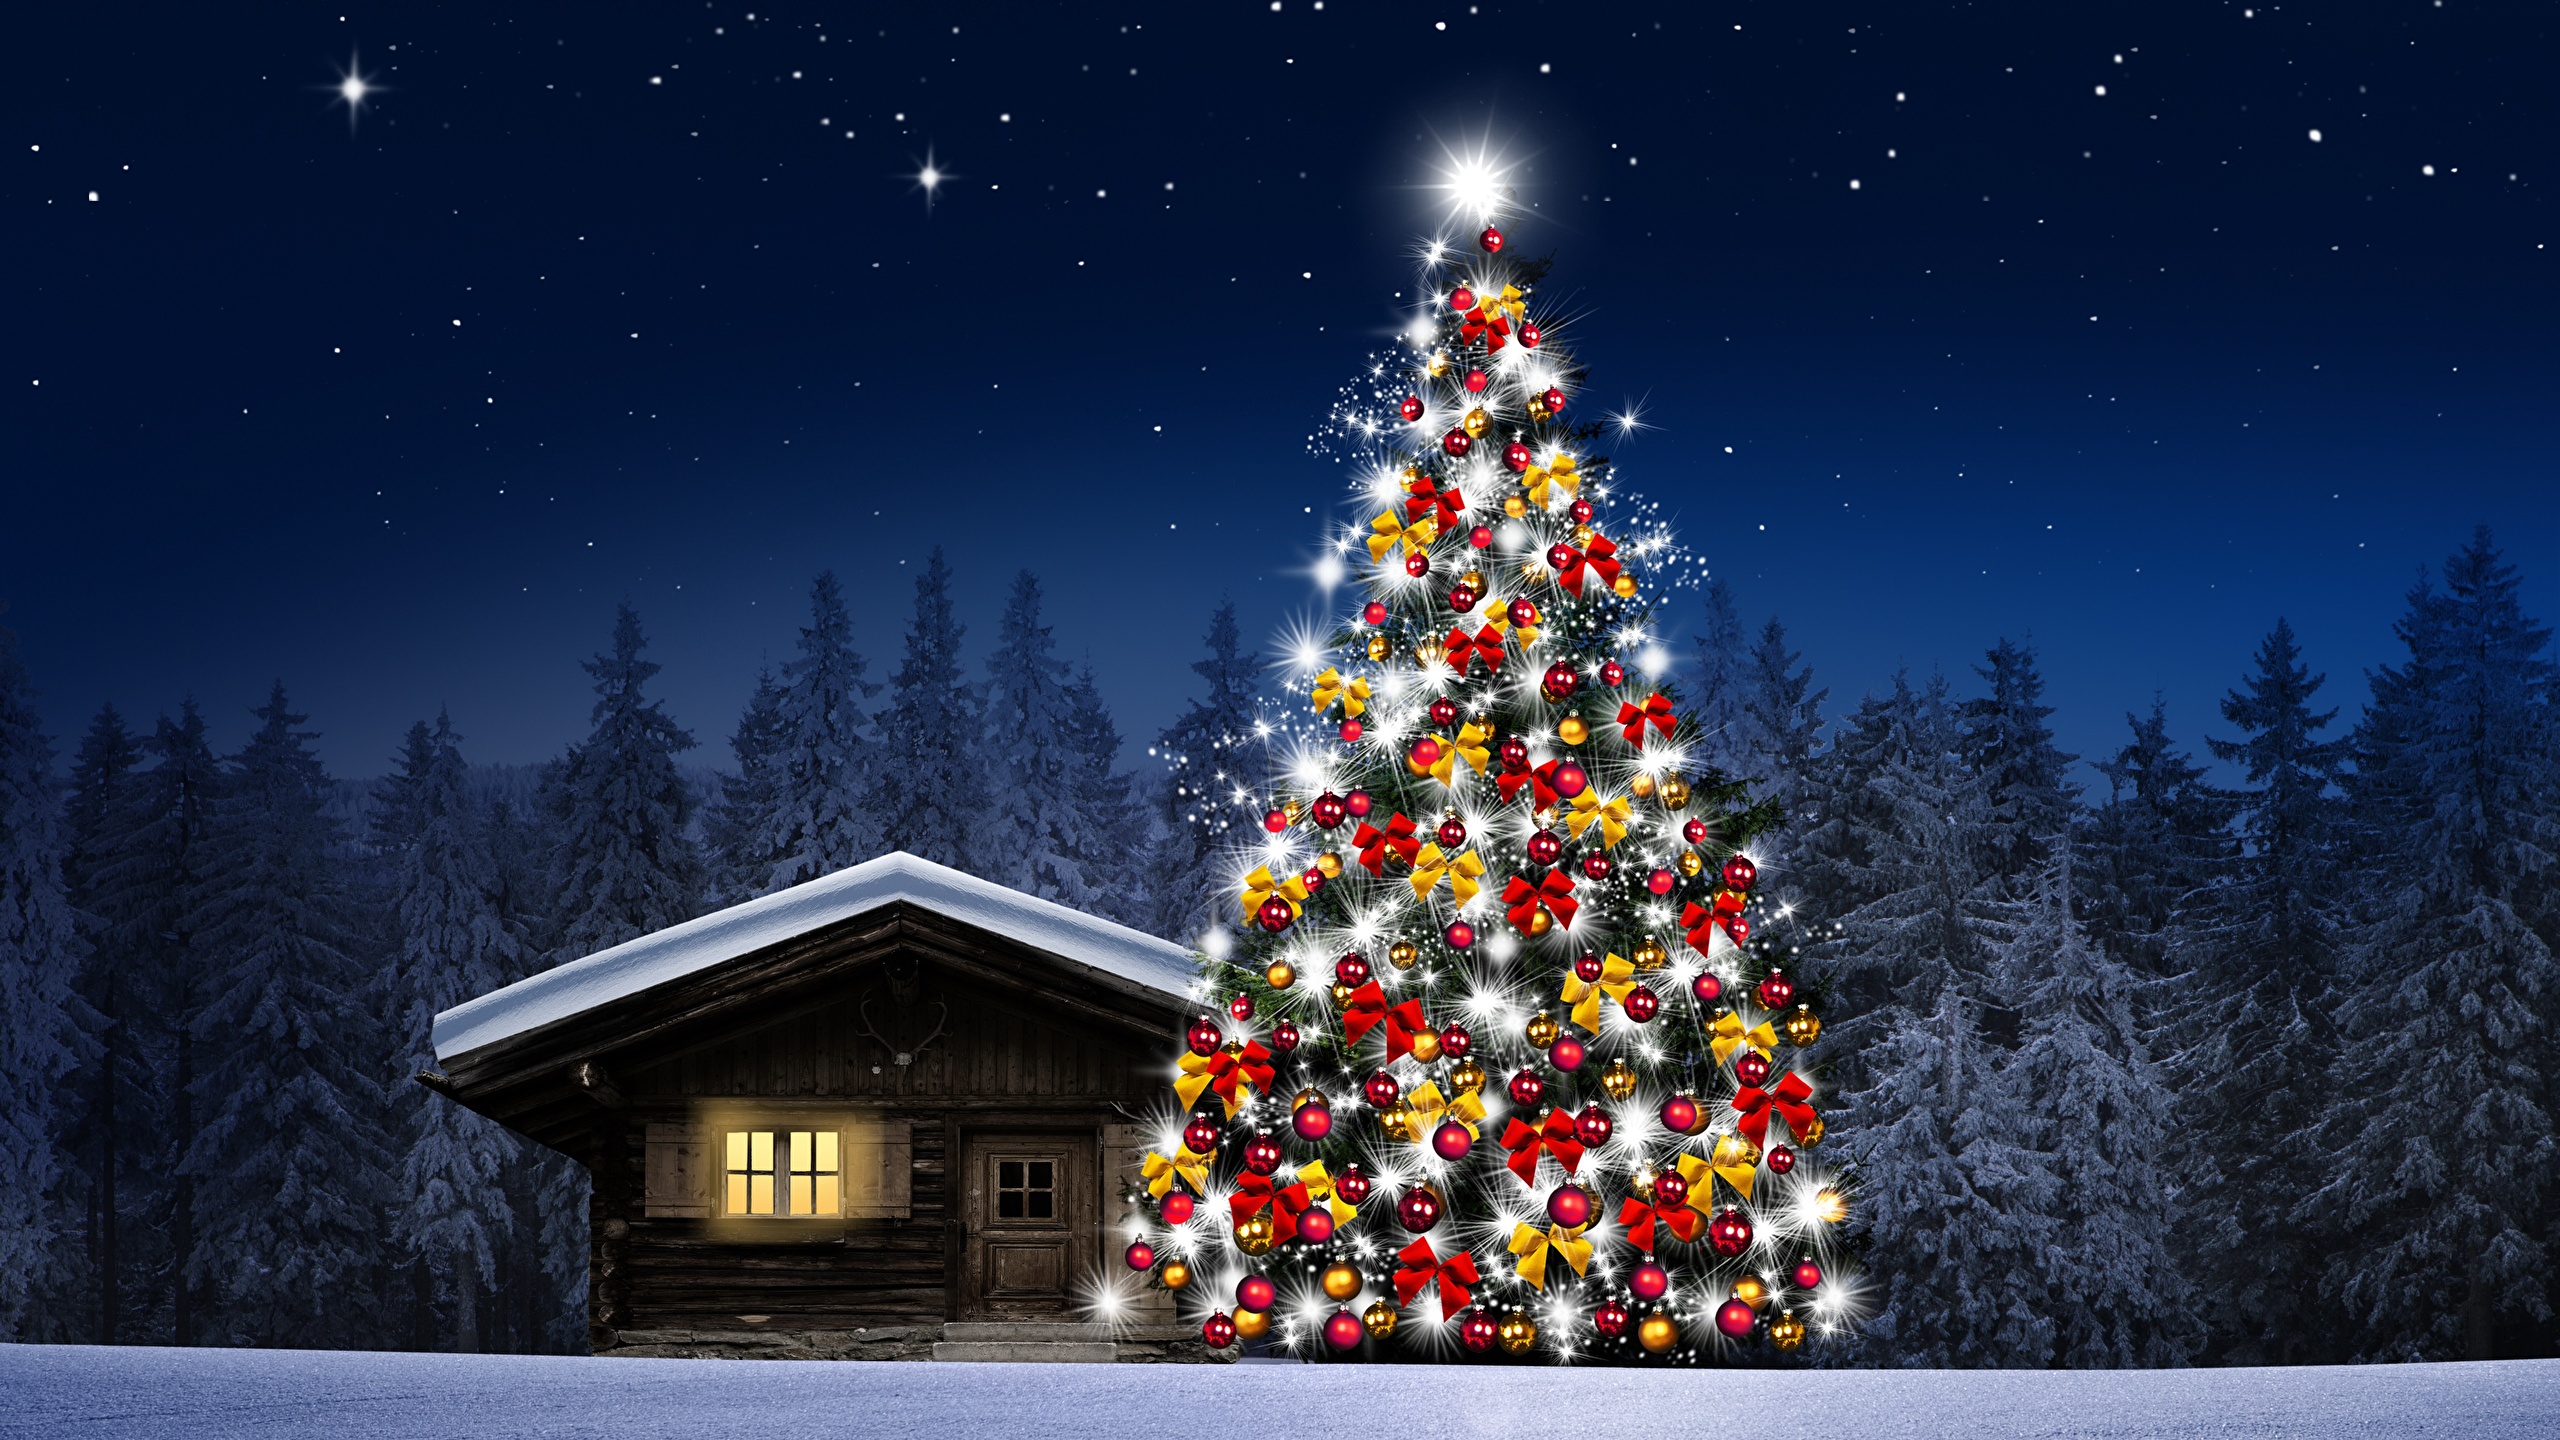 壁紙 2560x1440 住宅 森林 夜 クリスマスツリー 雪 自然 ダウンロード 写真